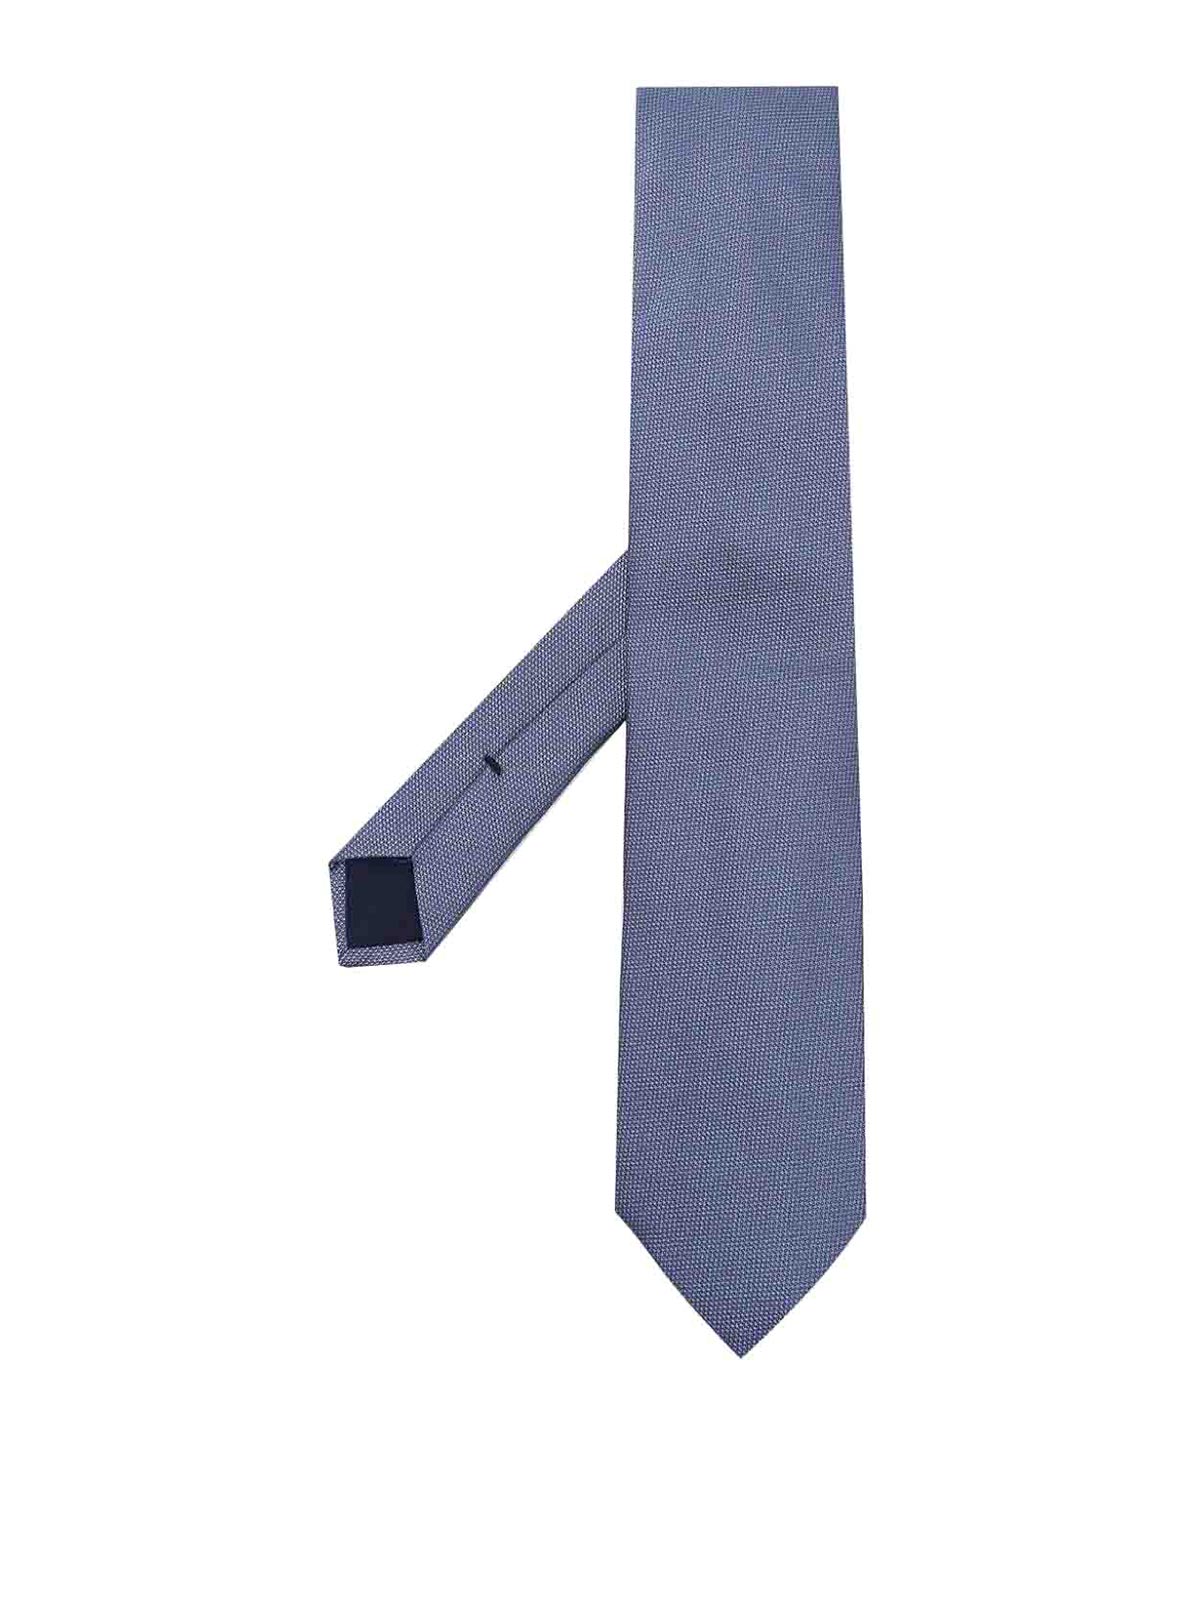 Corneliani Blue Silk Tie, Interwoven. In Black